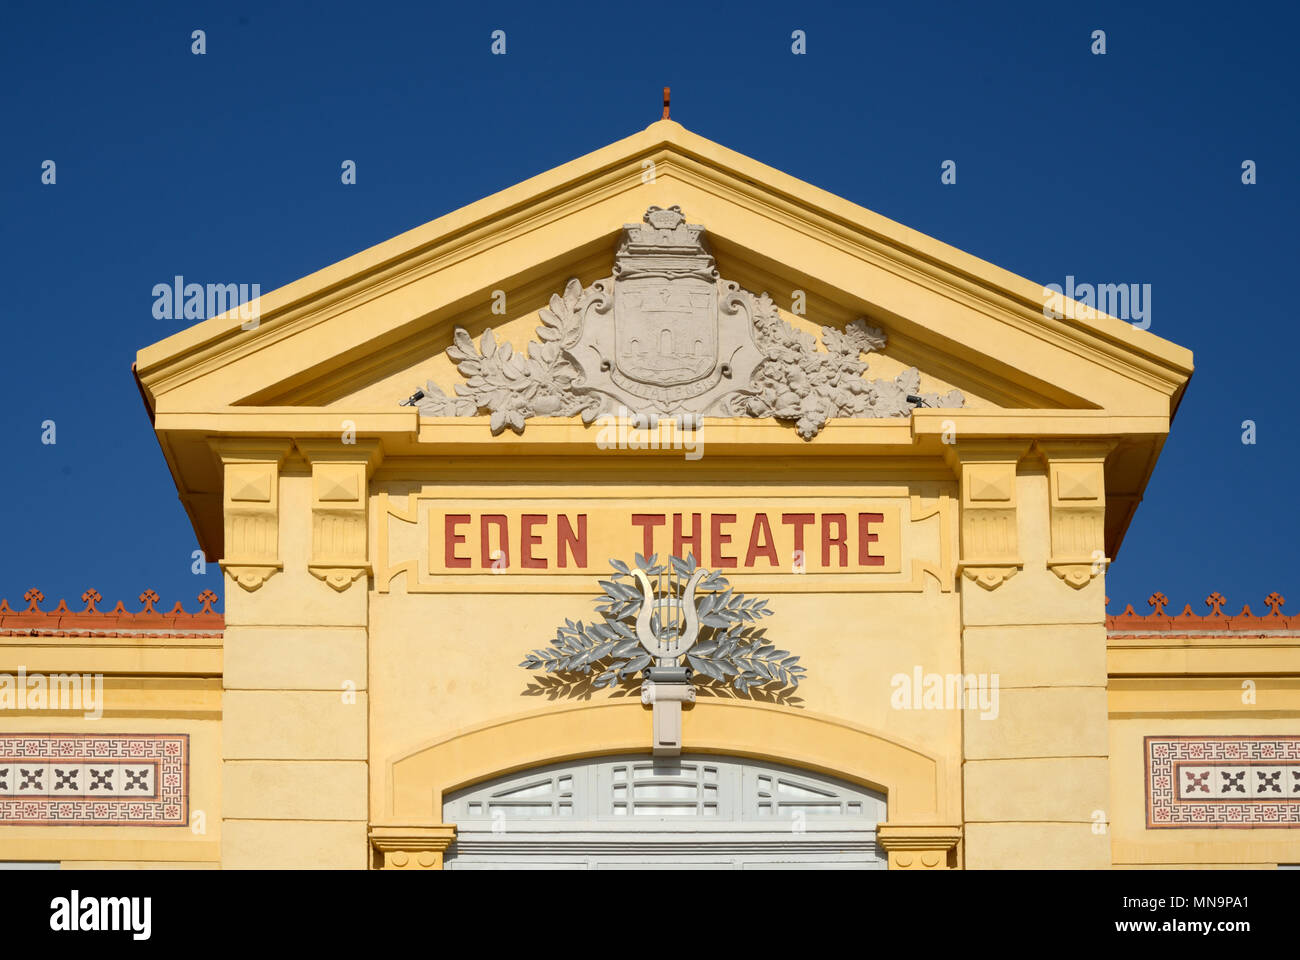 La facciata della storica Eden Theatre o Eden Theatre, uno del mondo più presto il cinema o cinema, La Ciotat, Provenza, Francia Foto Stock